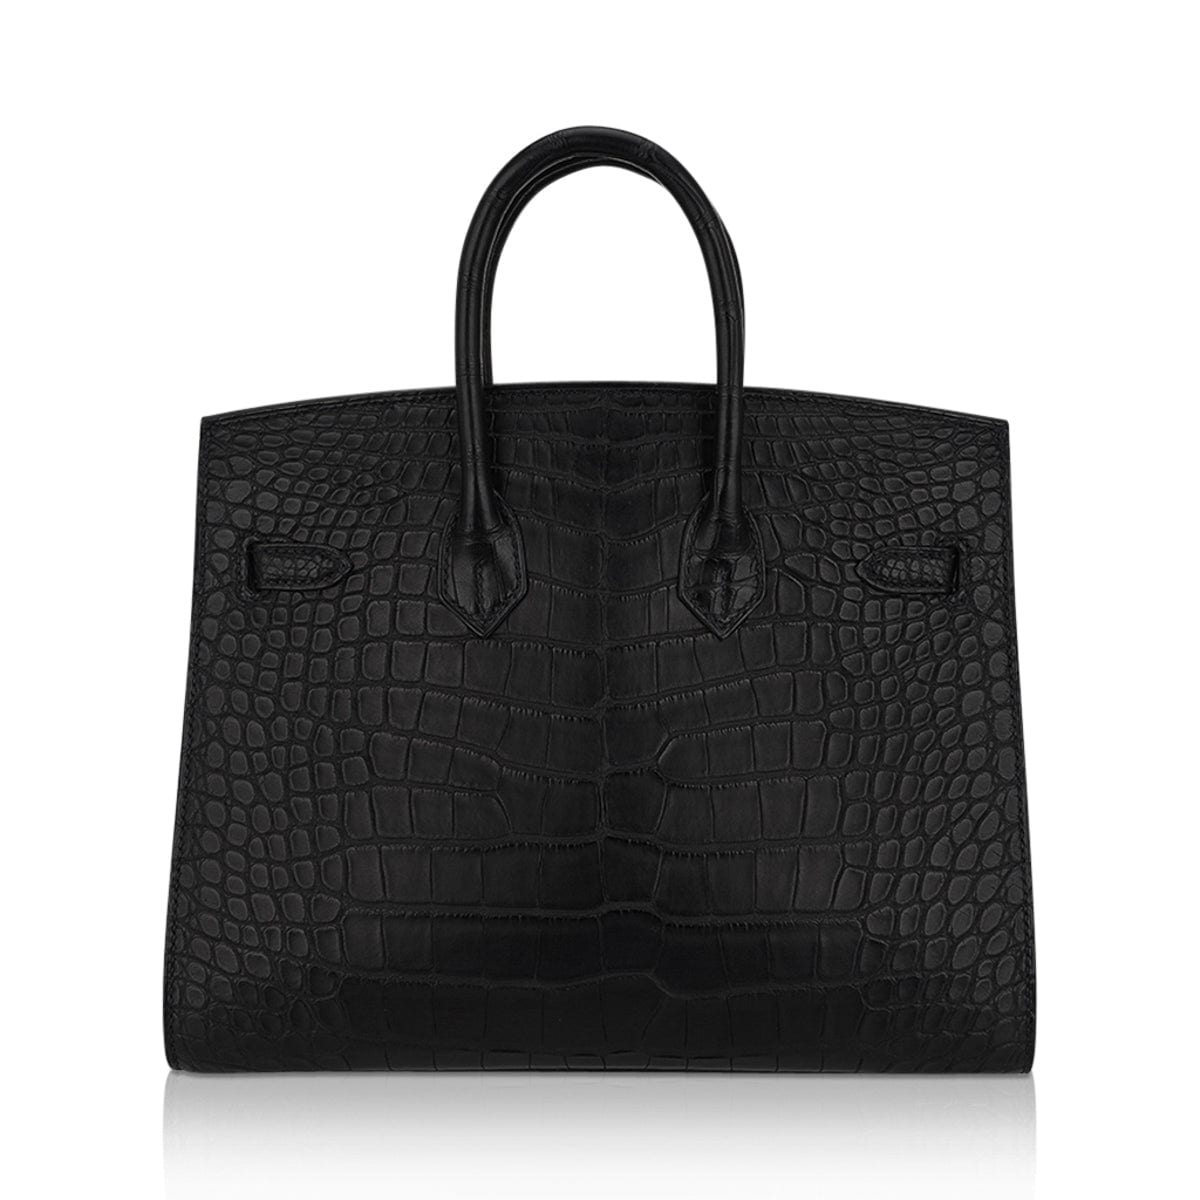 Hermes Birkin 25 Sellier Bag in Black Matte Alligator with Gold Hardware